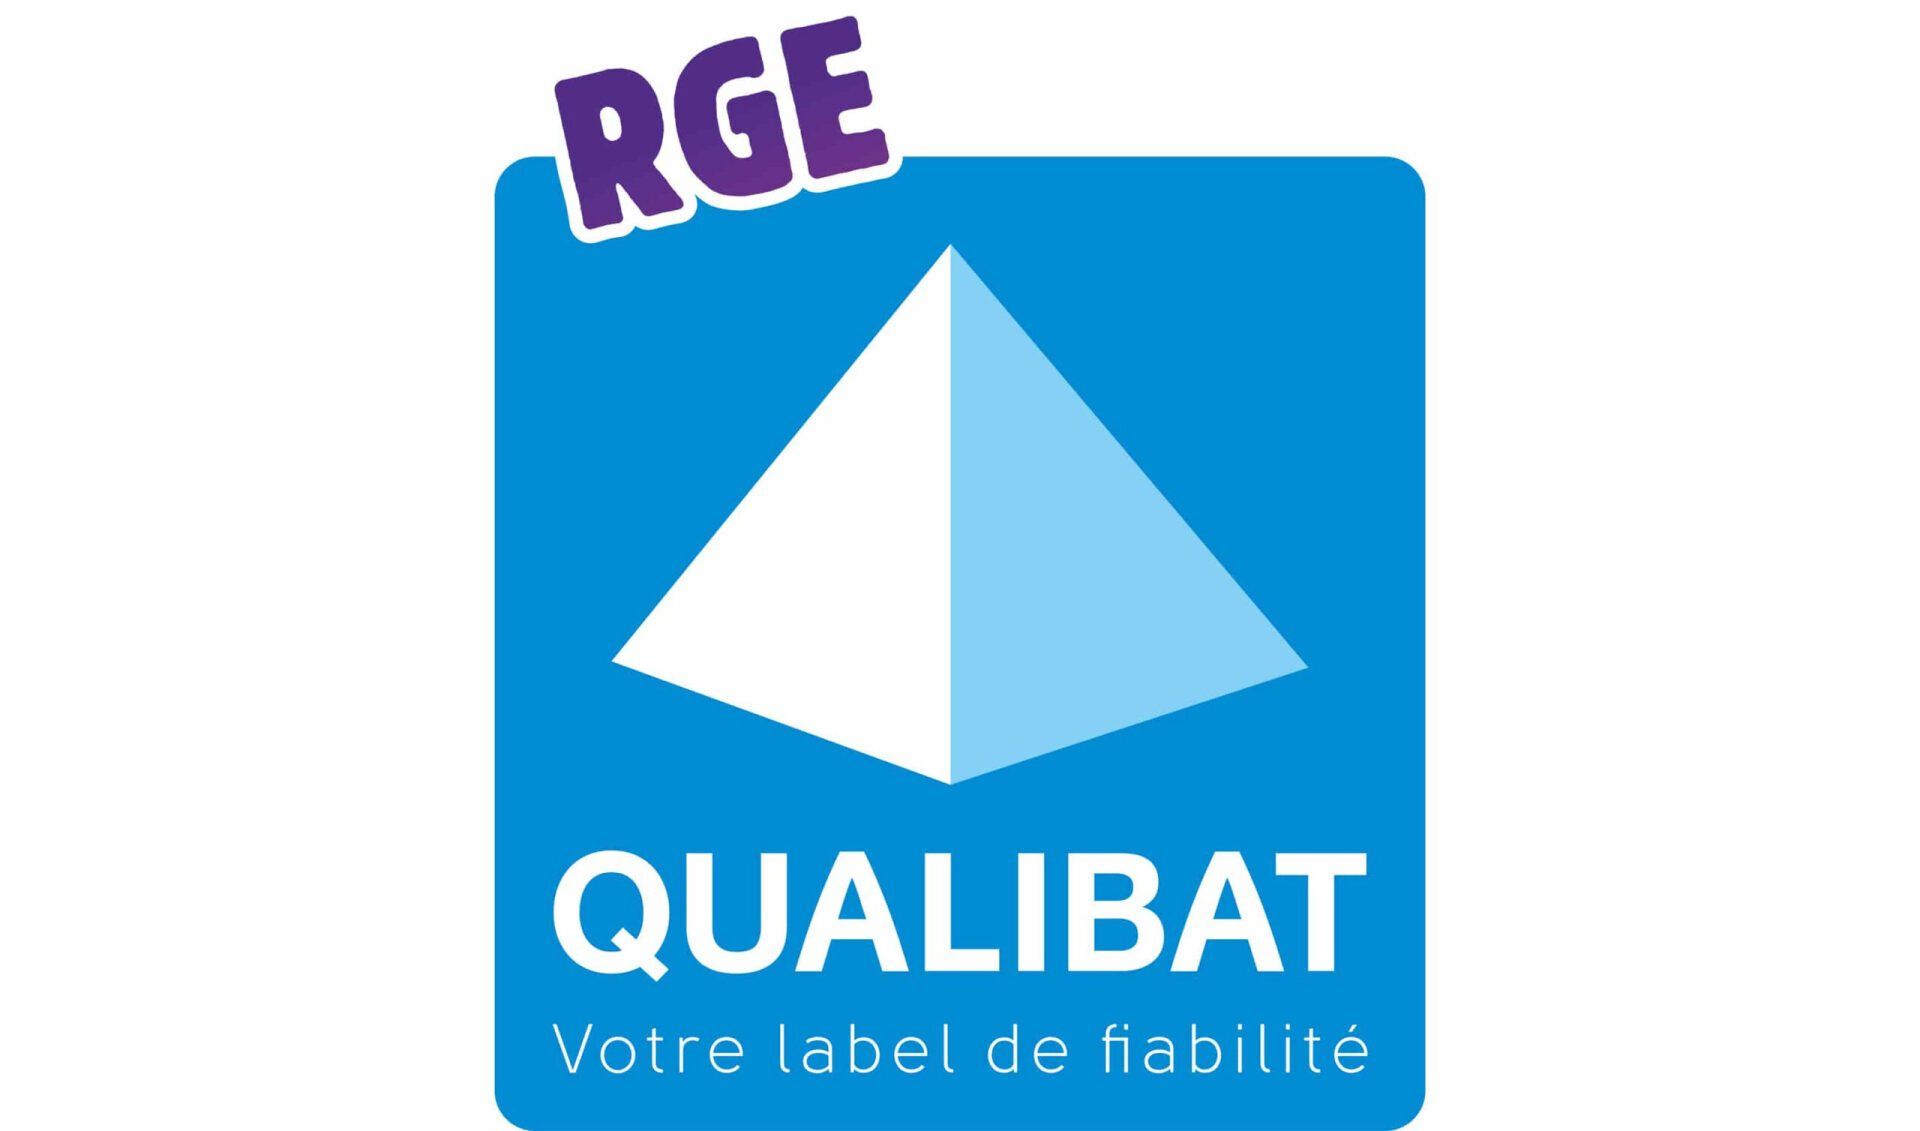 Certification RGE qualibat et PG Professionnel du Gaz